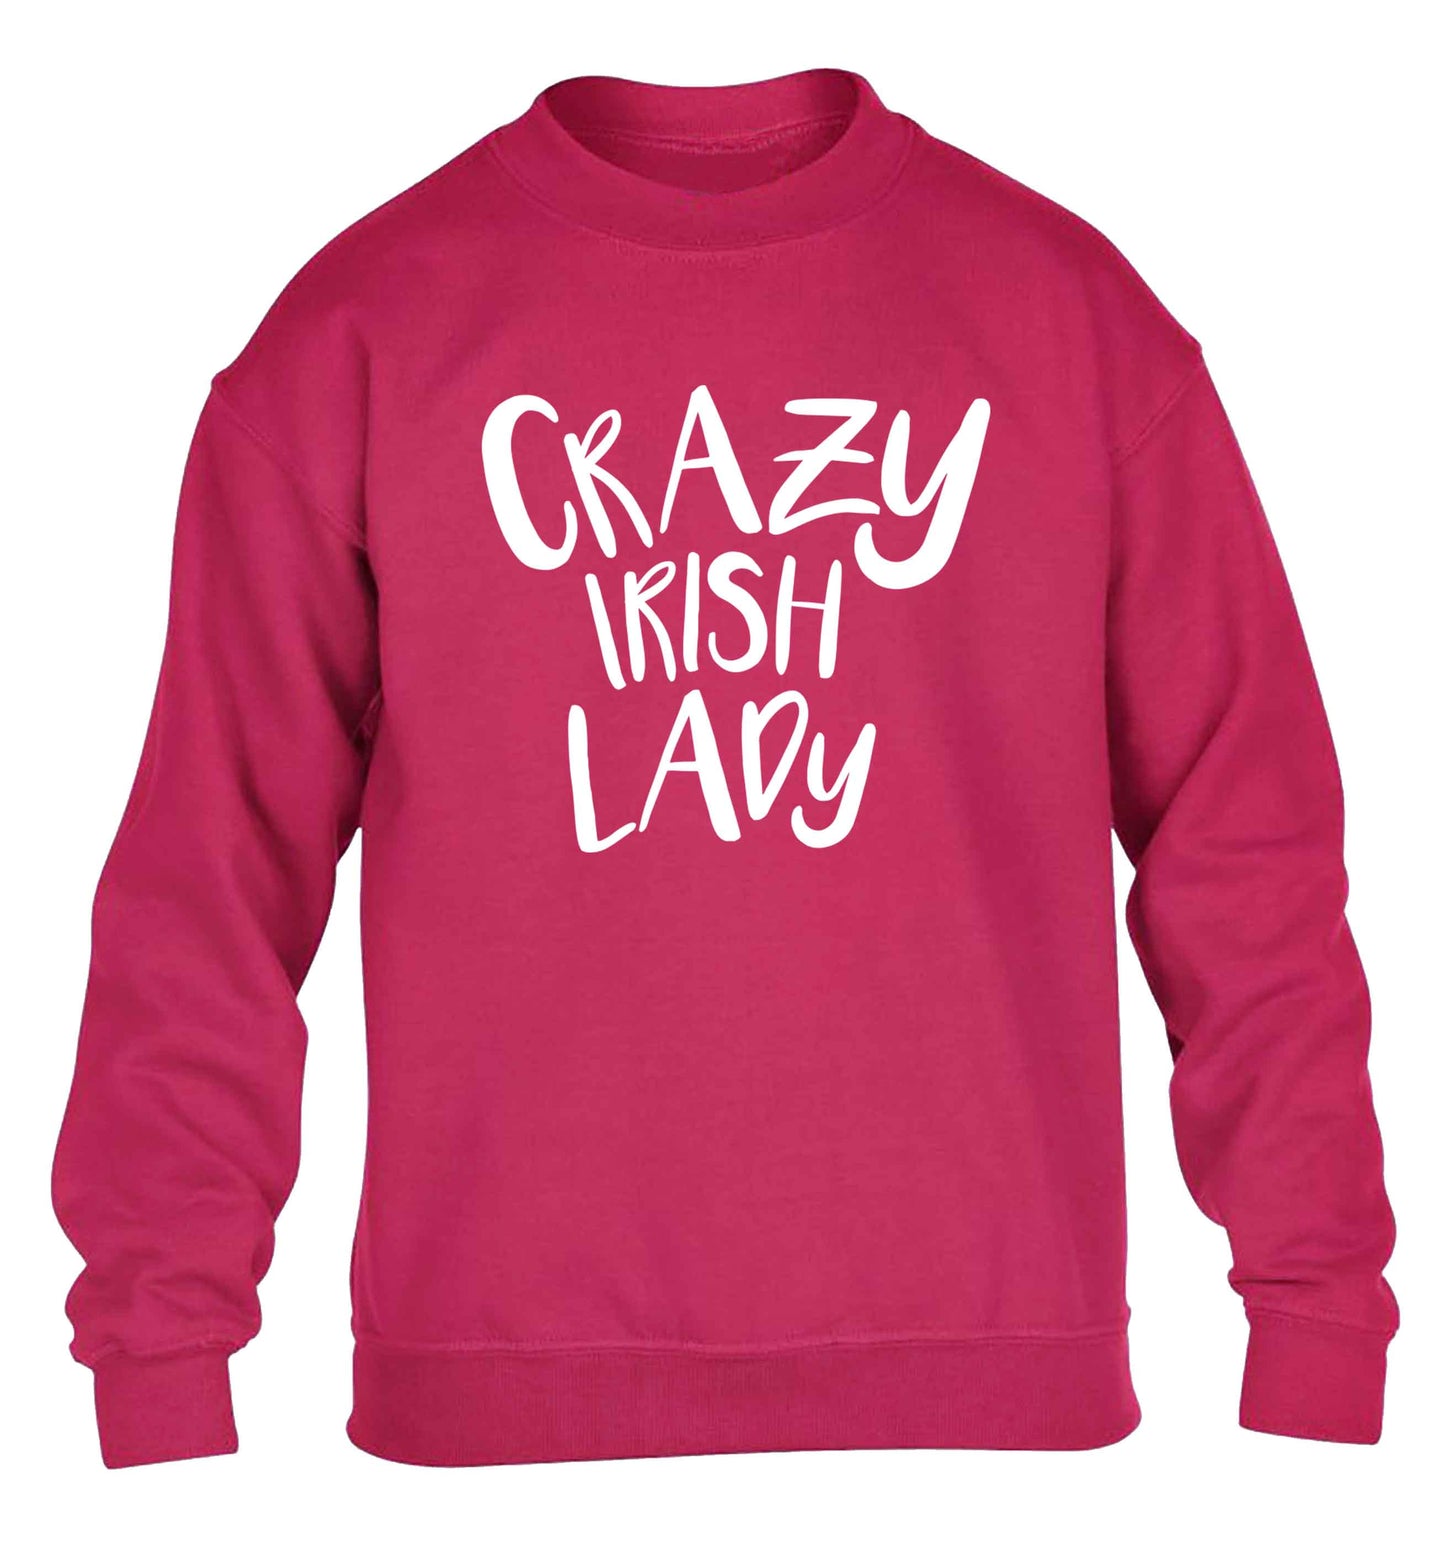 Crazy Irish lady children's pink sweater 12-13 Years